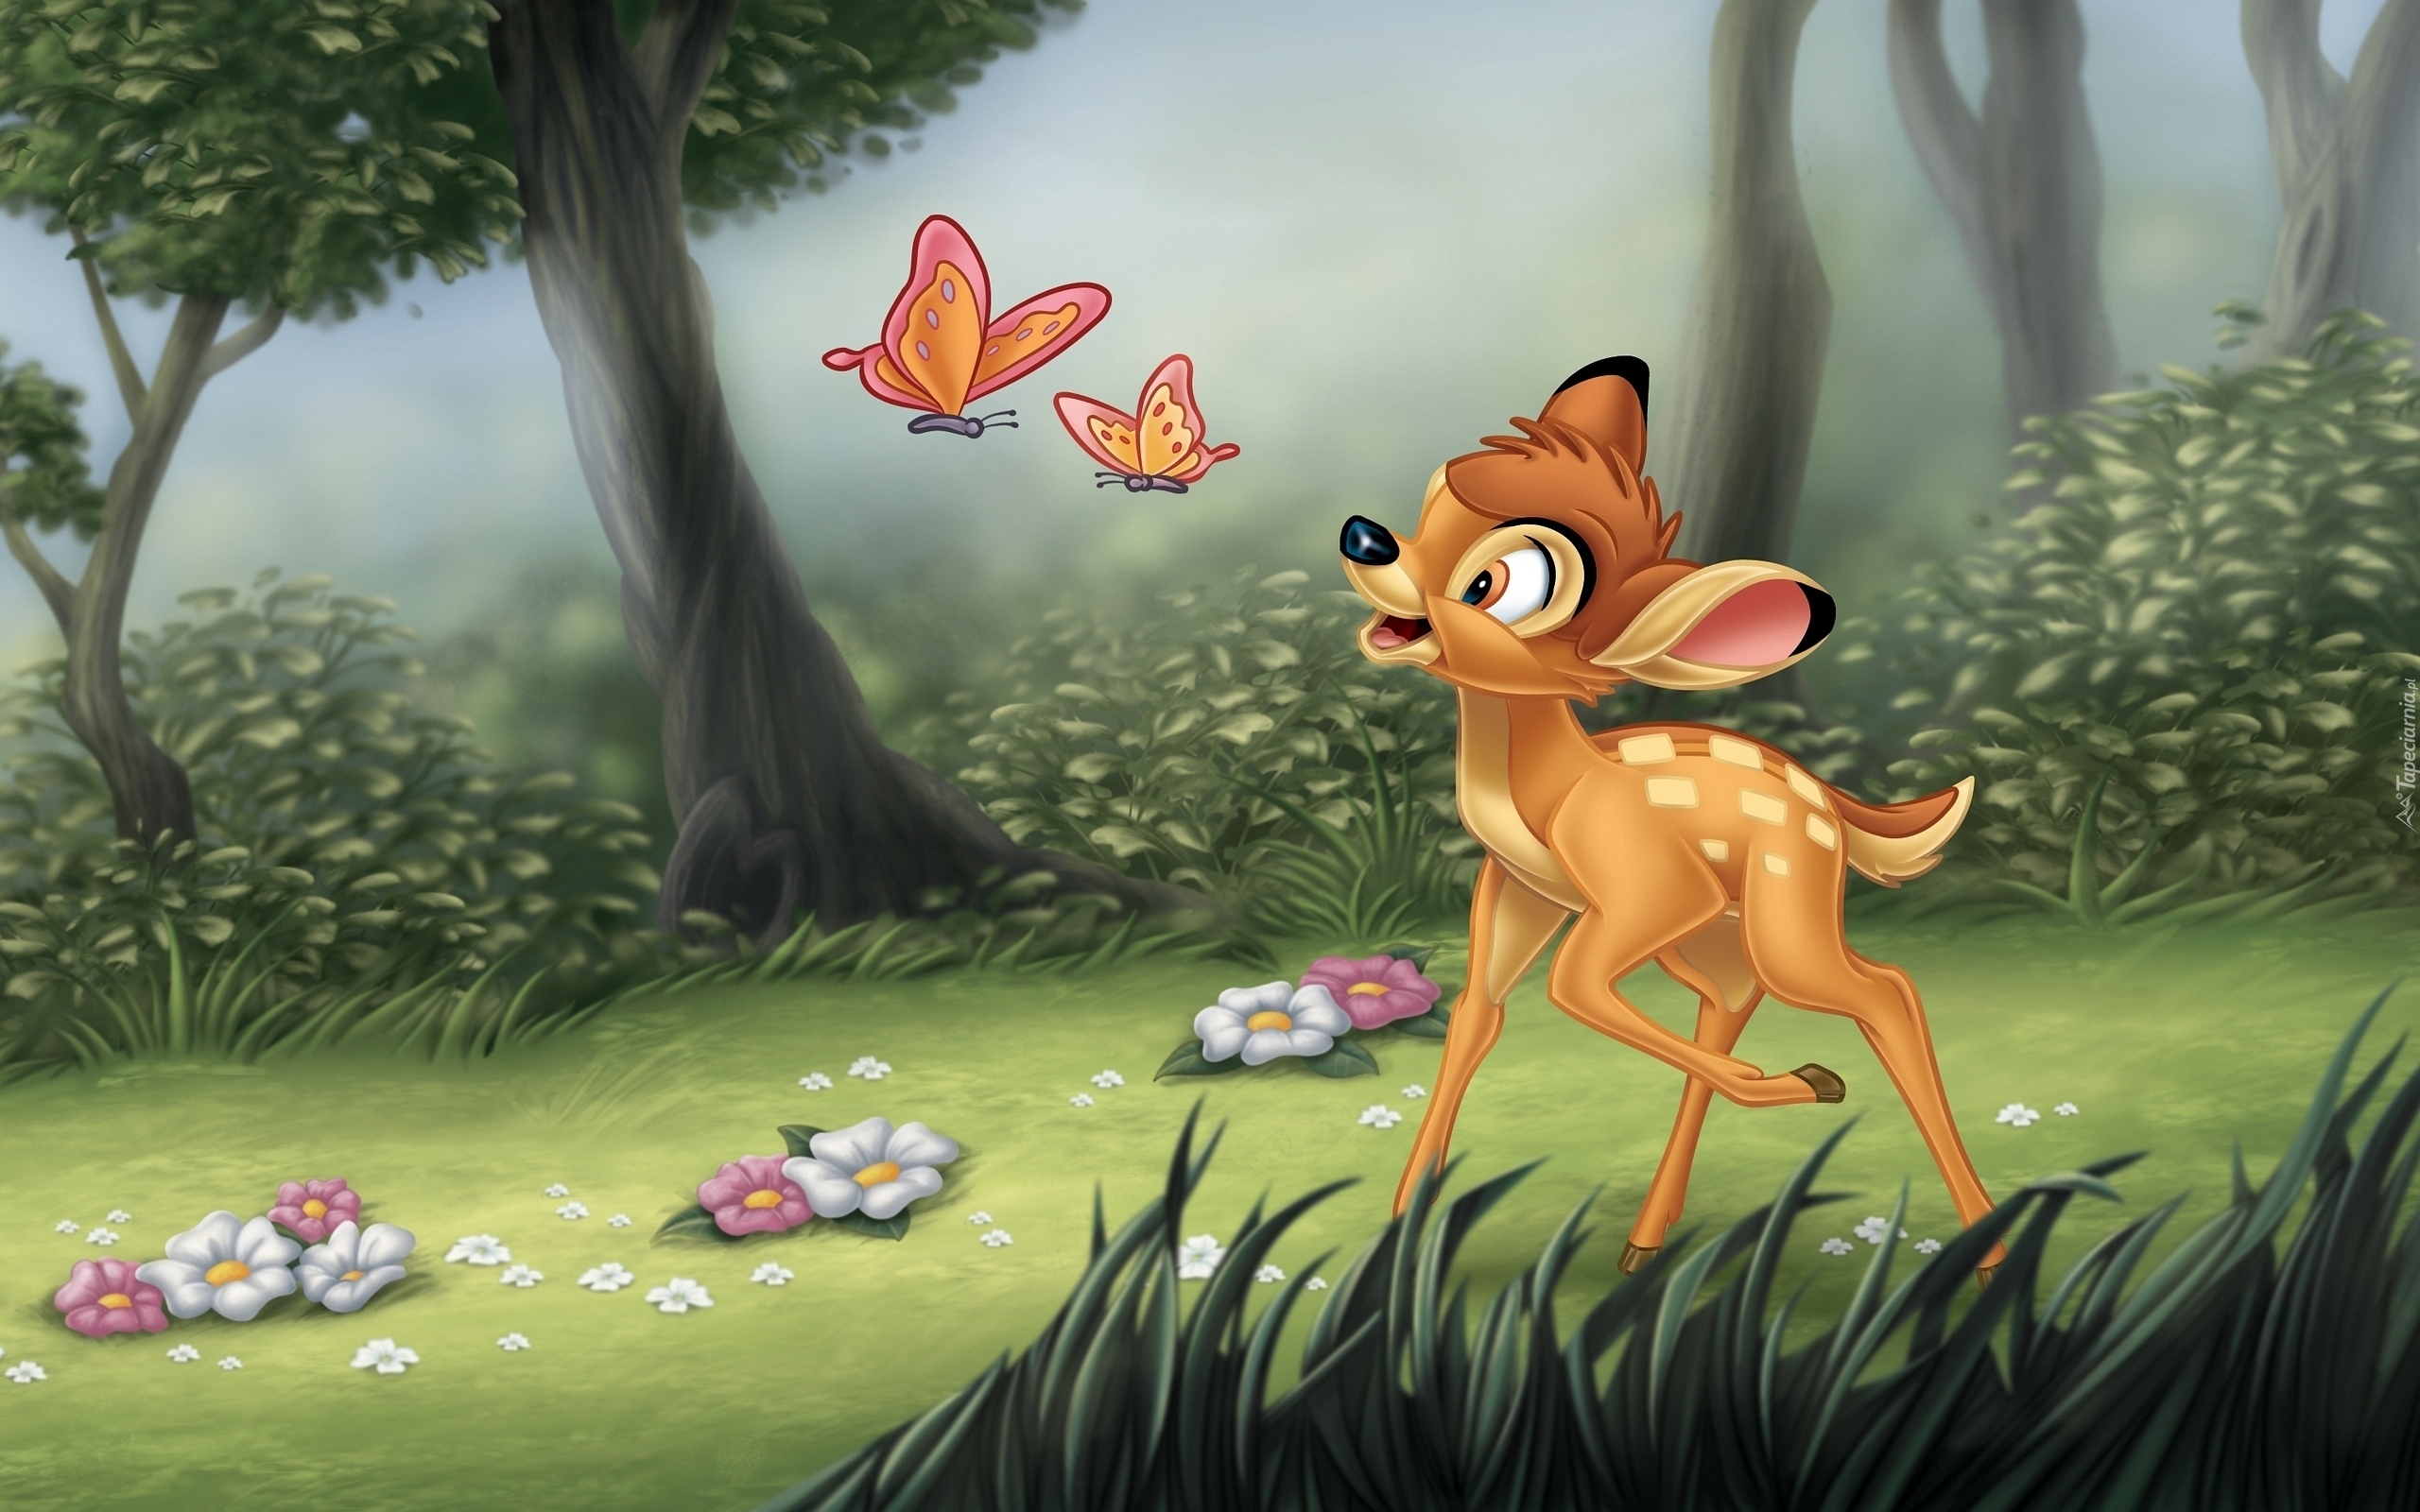 Bajka, Filma animowany, Bambi, Las, Mgła, Motyle